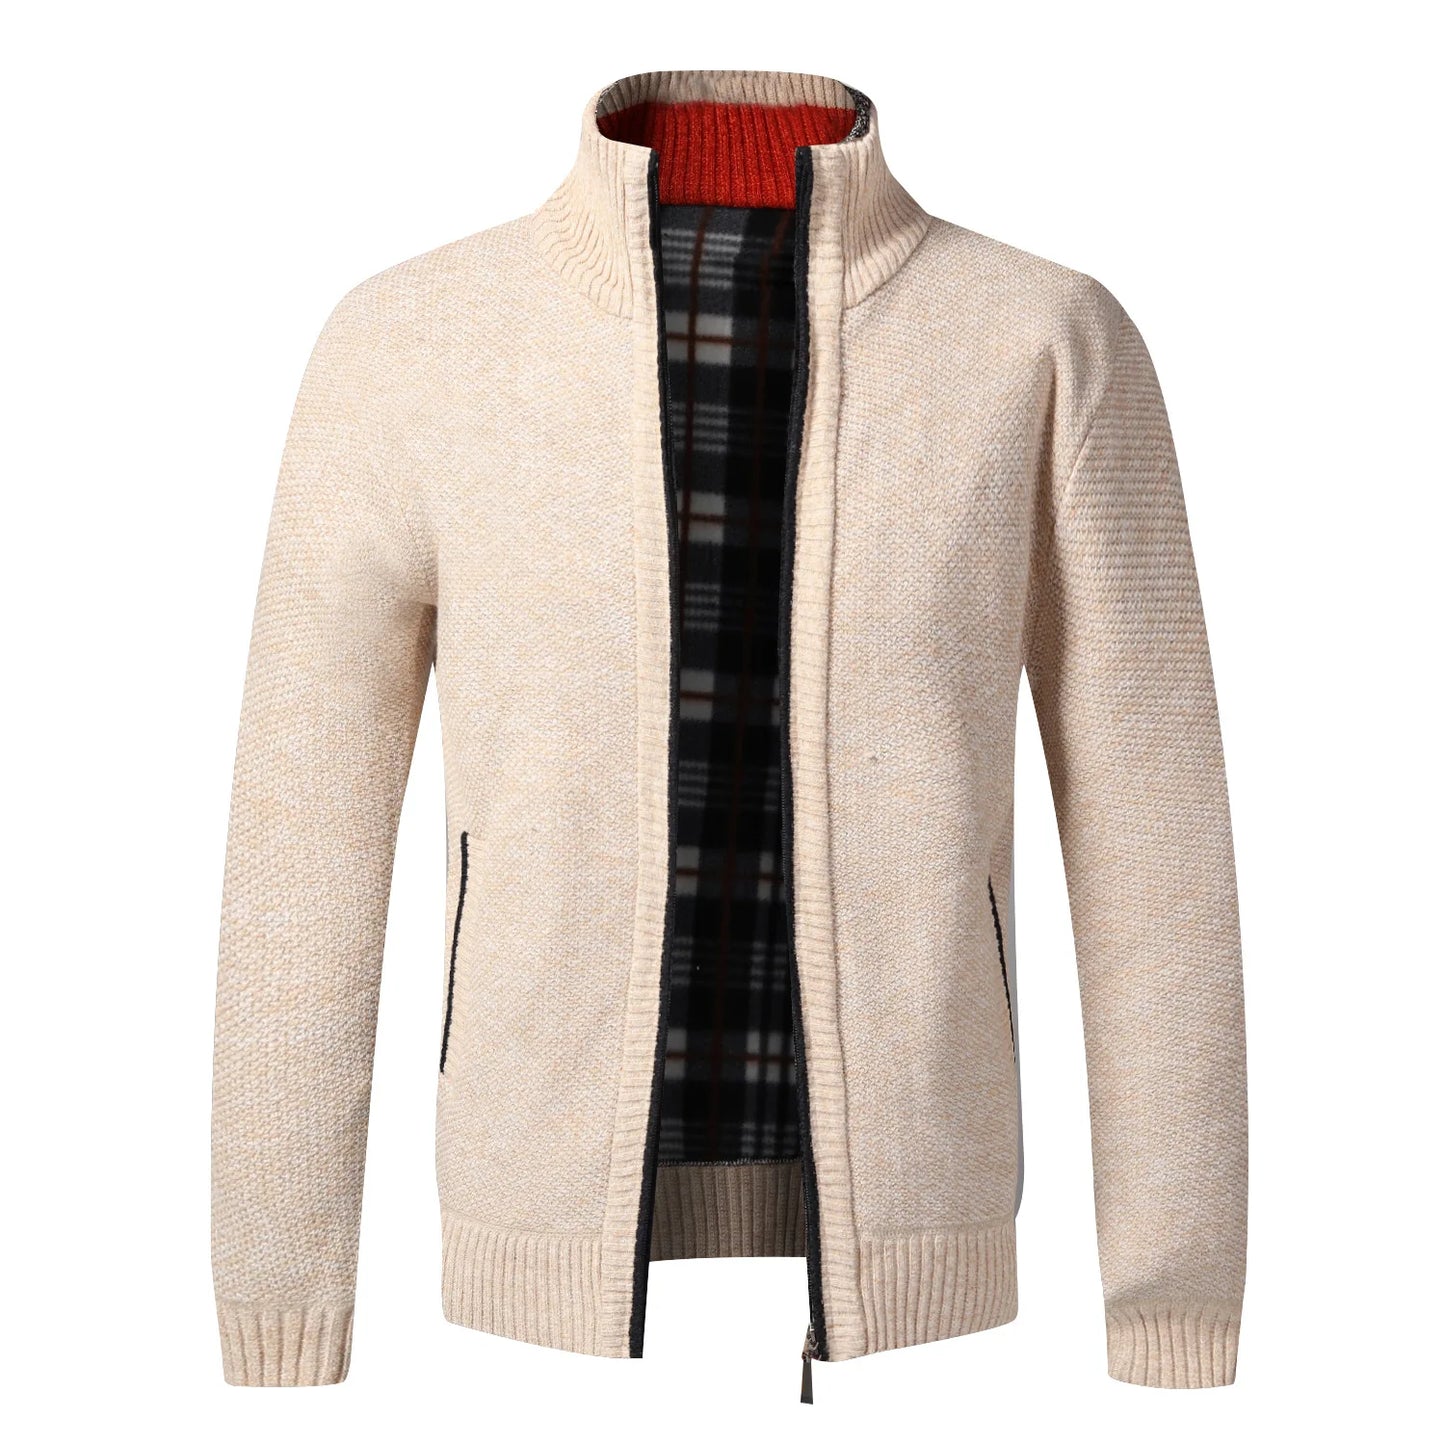 TEEK - Warm Knitted Zipper Sweater Jacket JACKET theteekdotcom beige US XS | Tag M 